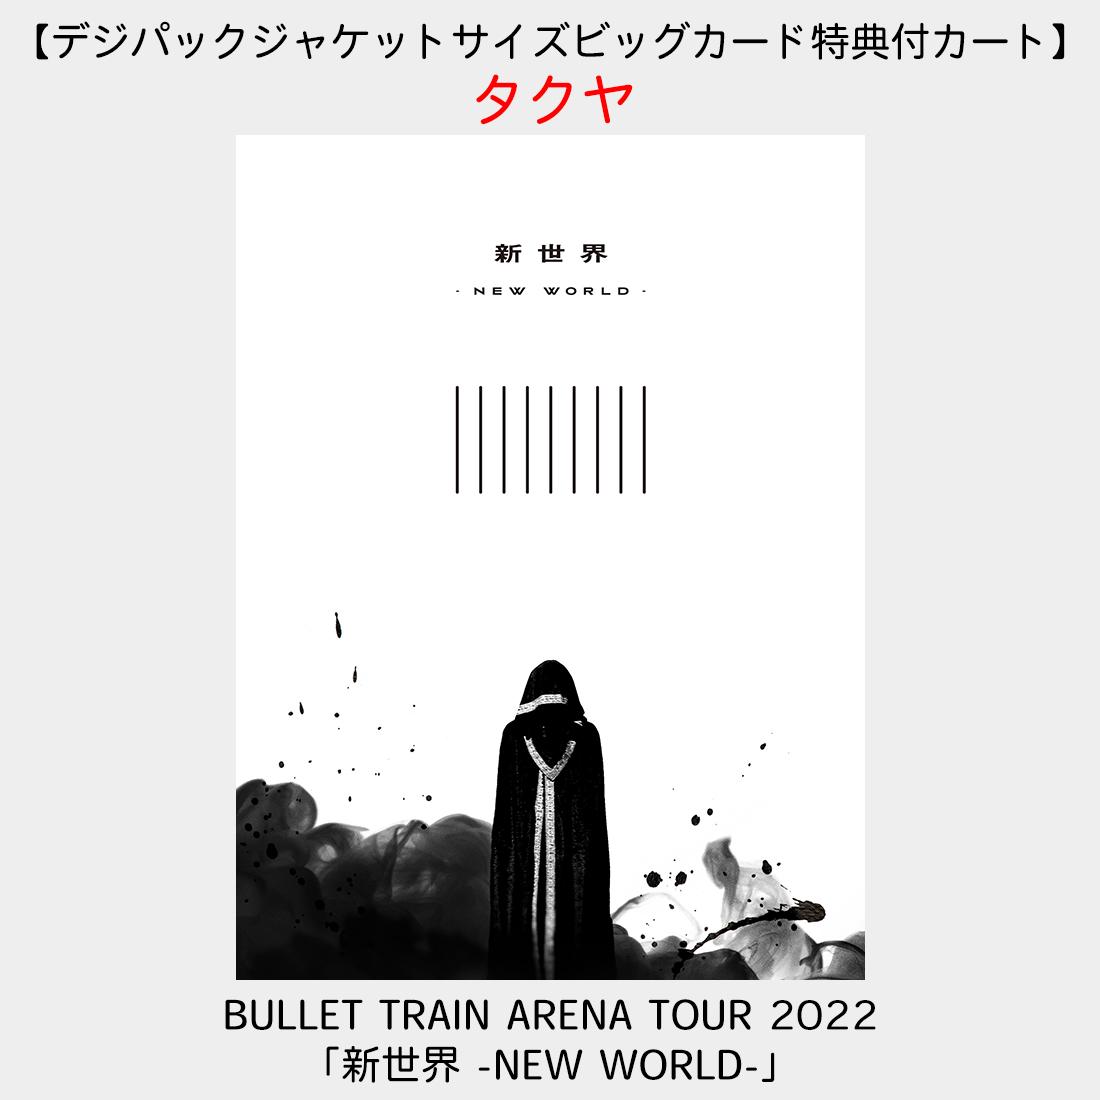 【デジパックジャケットサイズビッグカード特典付カート】BULLET TRAIN ARENA TOUR 2022「新世界 -NEW  WORLD-」(タクヤ)